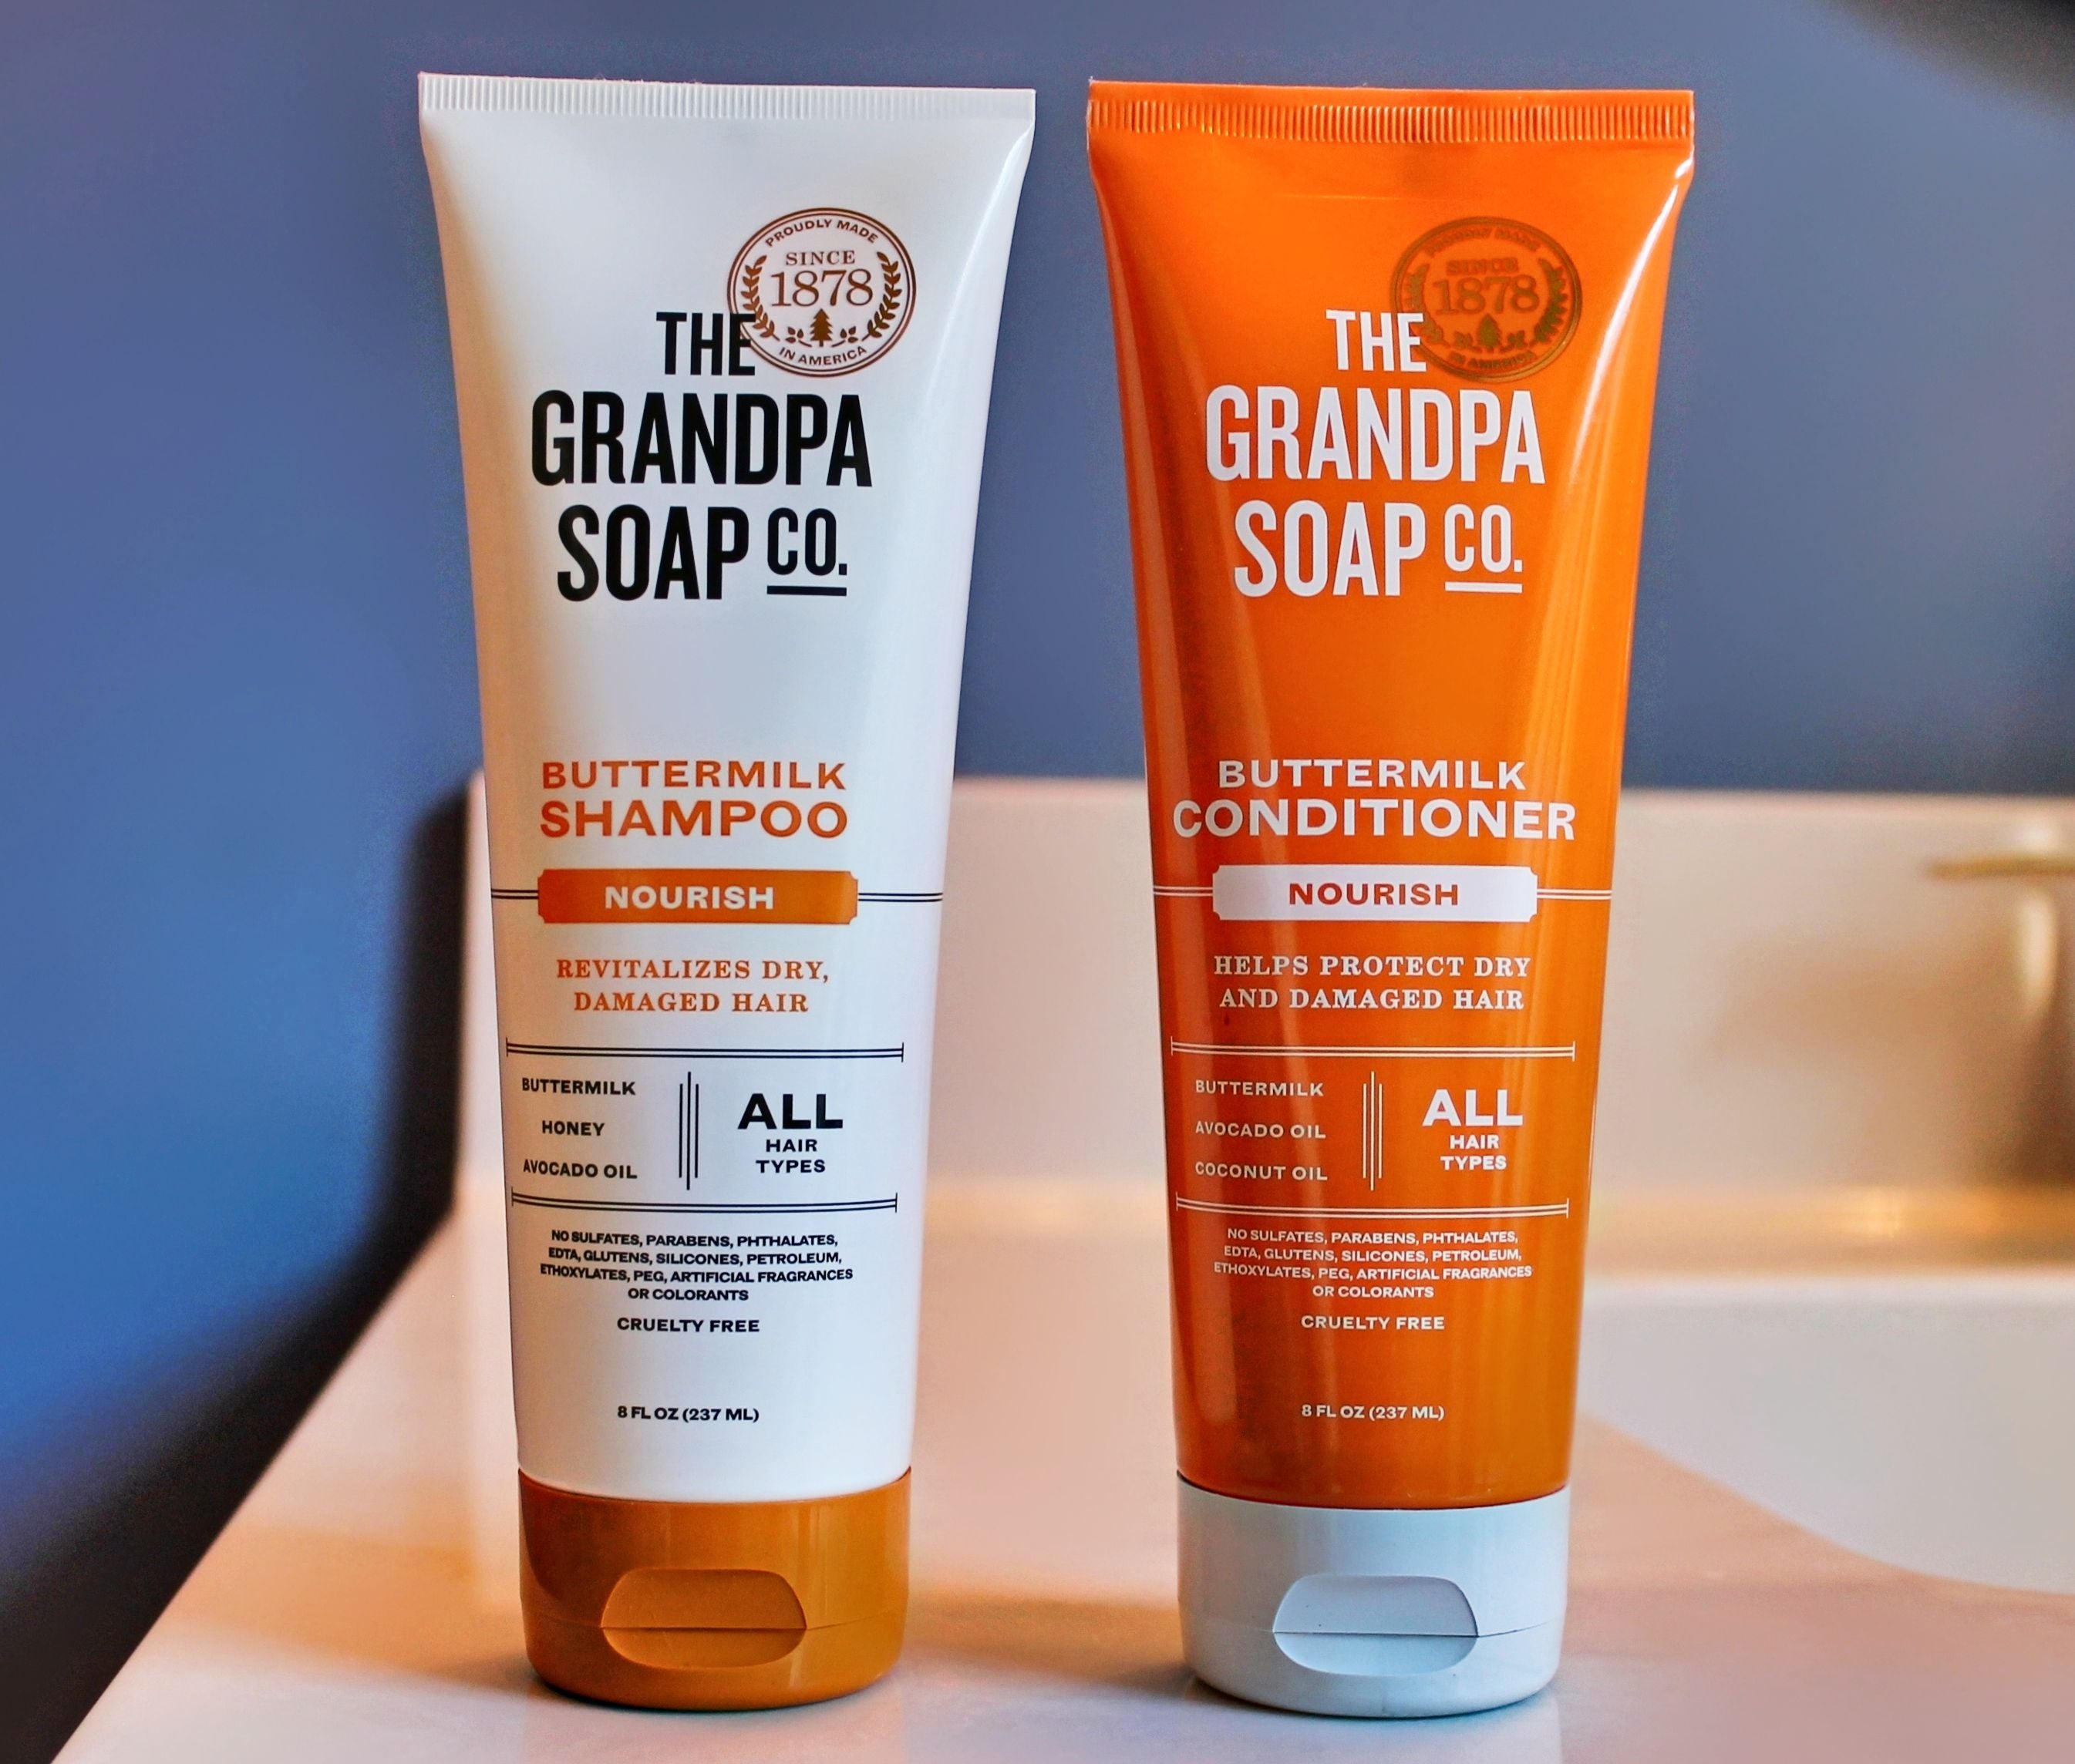 The Grandpa Soap Co. Conditioner, Buttermilk, Nourish - 8 fl oz